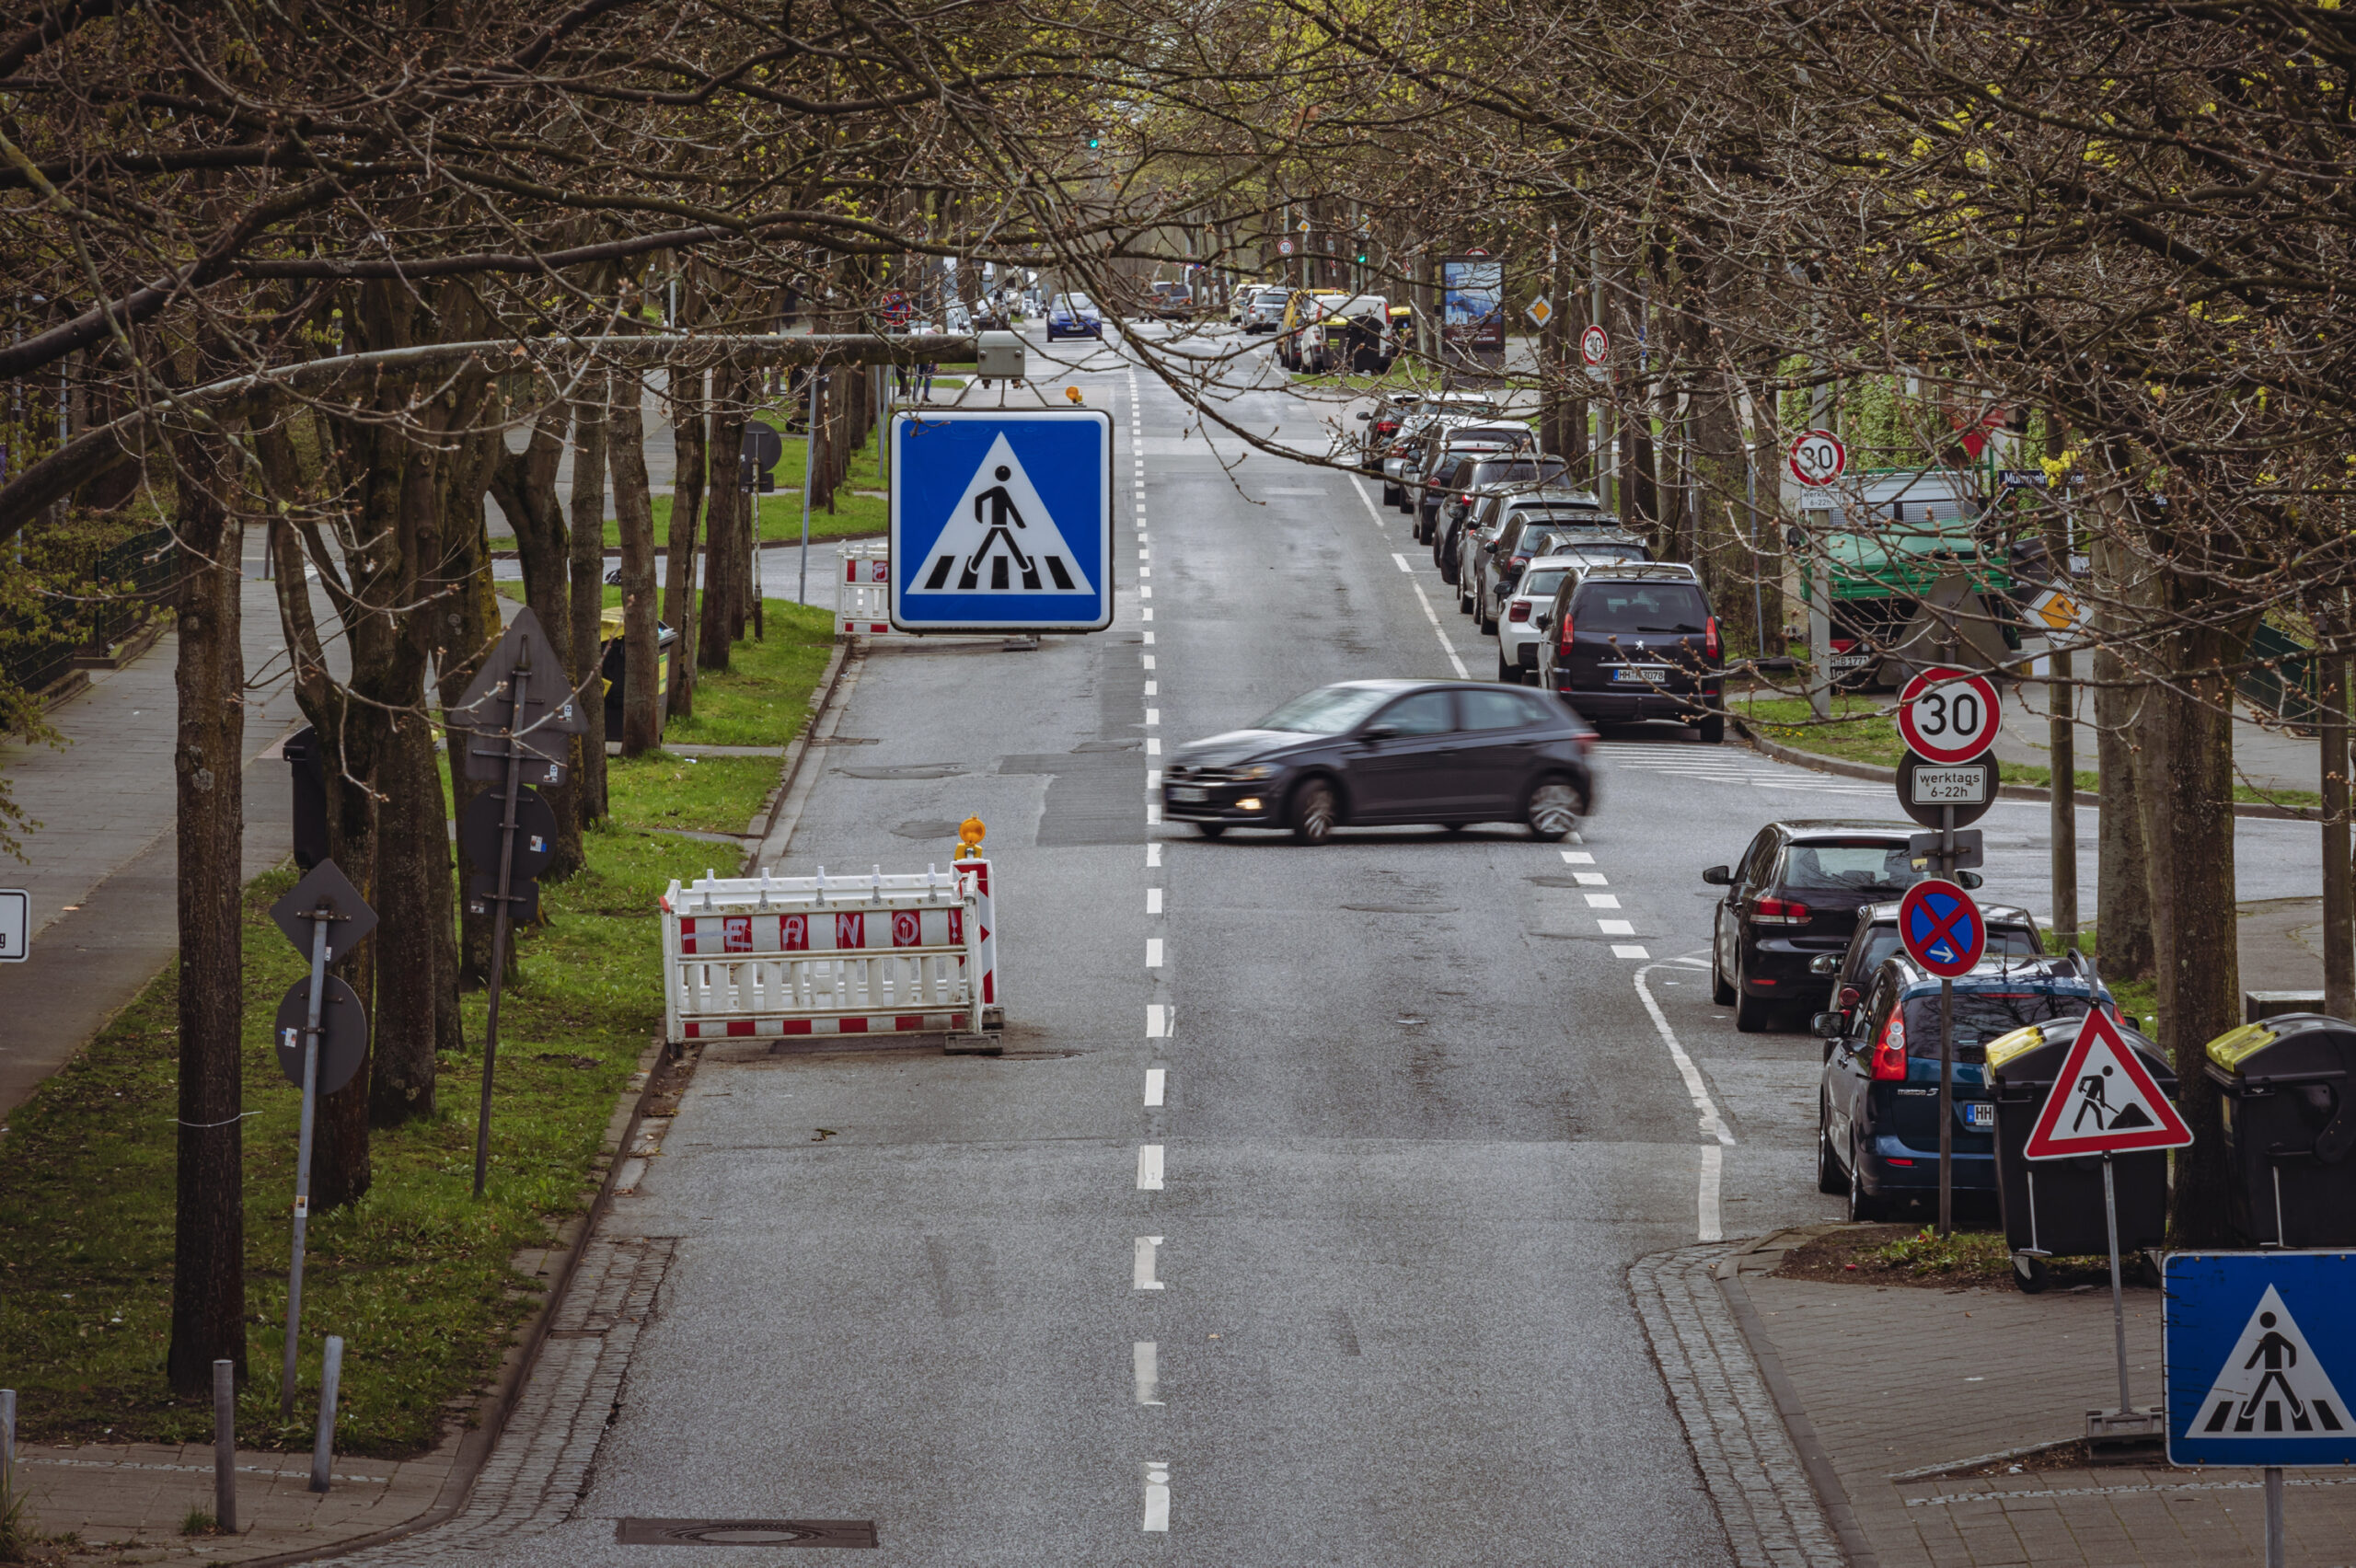 100 Parkplätze und 42 Bäume sollten auf der Straße Mümmelmannsberg für die Veloroute 8 weichen. Jetzt überlegt es sich der Bezirk anders.